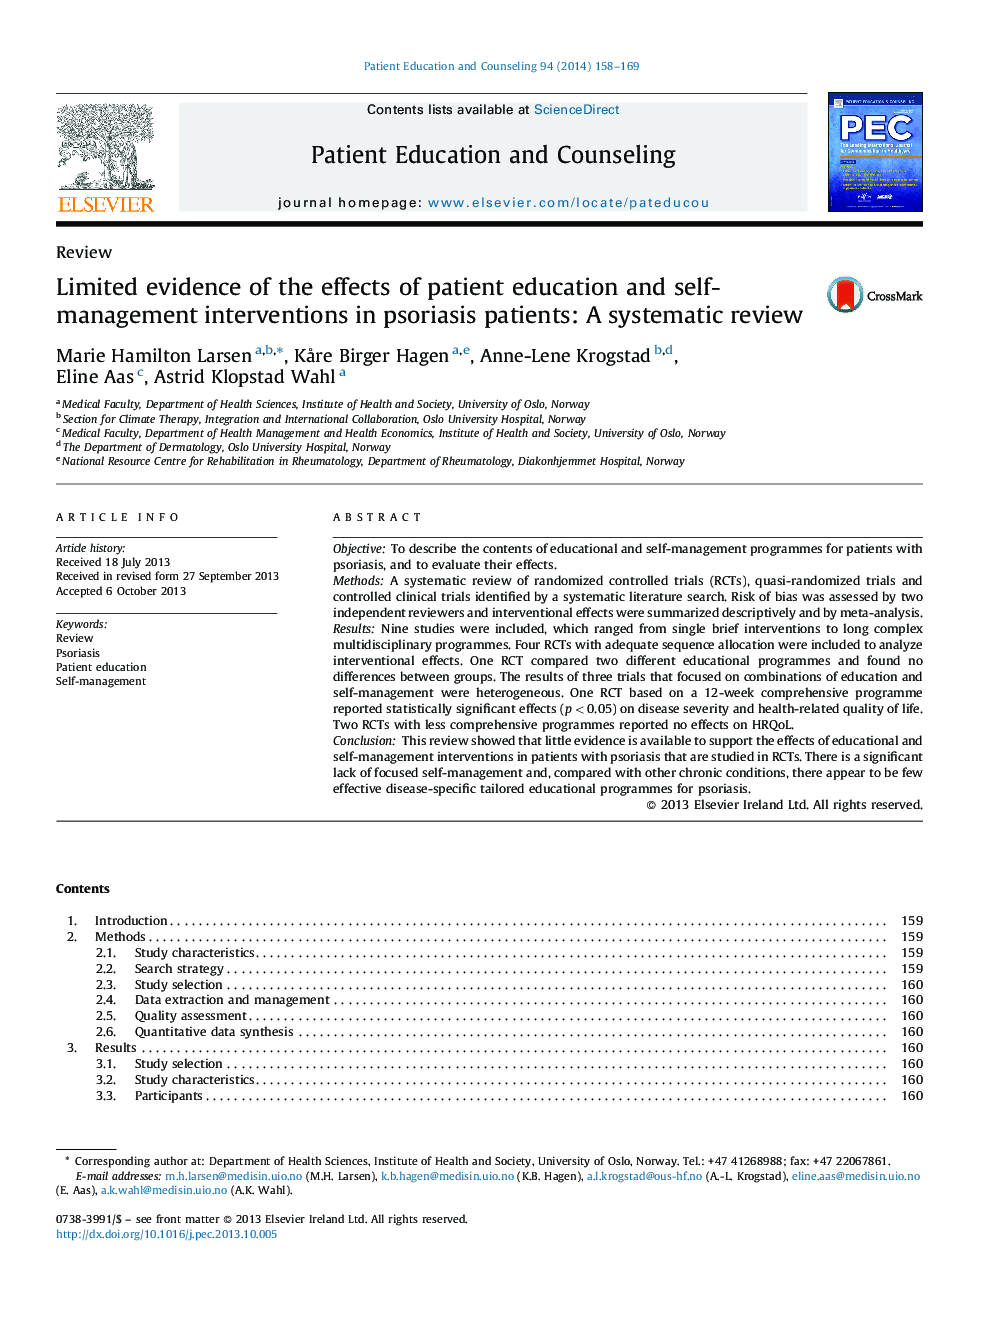 شواهد محدود اثرات آموزش بیمار و مداخلات خود مداخله در بیماران پسوریازیس: بررسی سیستماتیک 